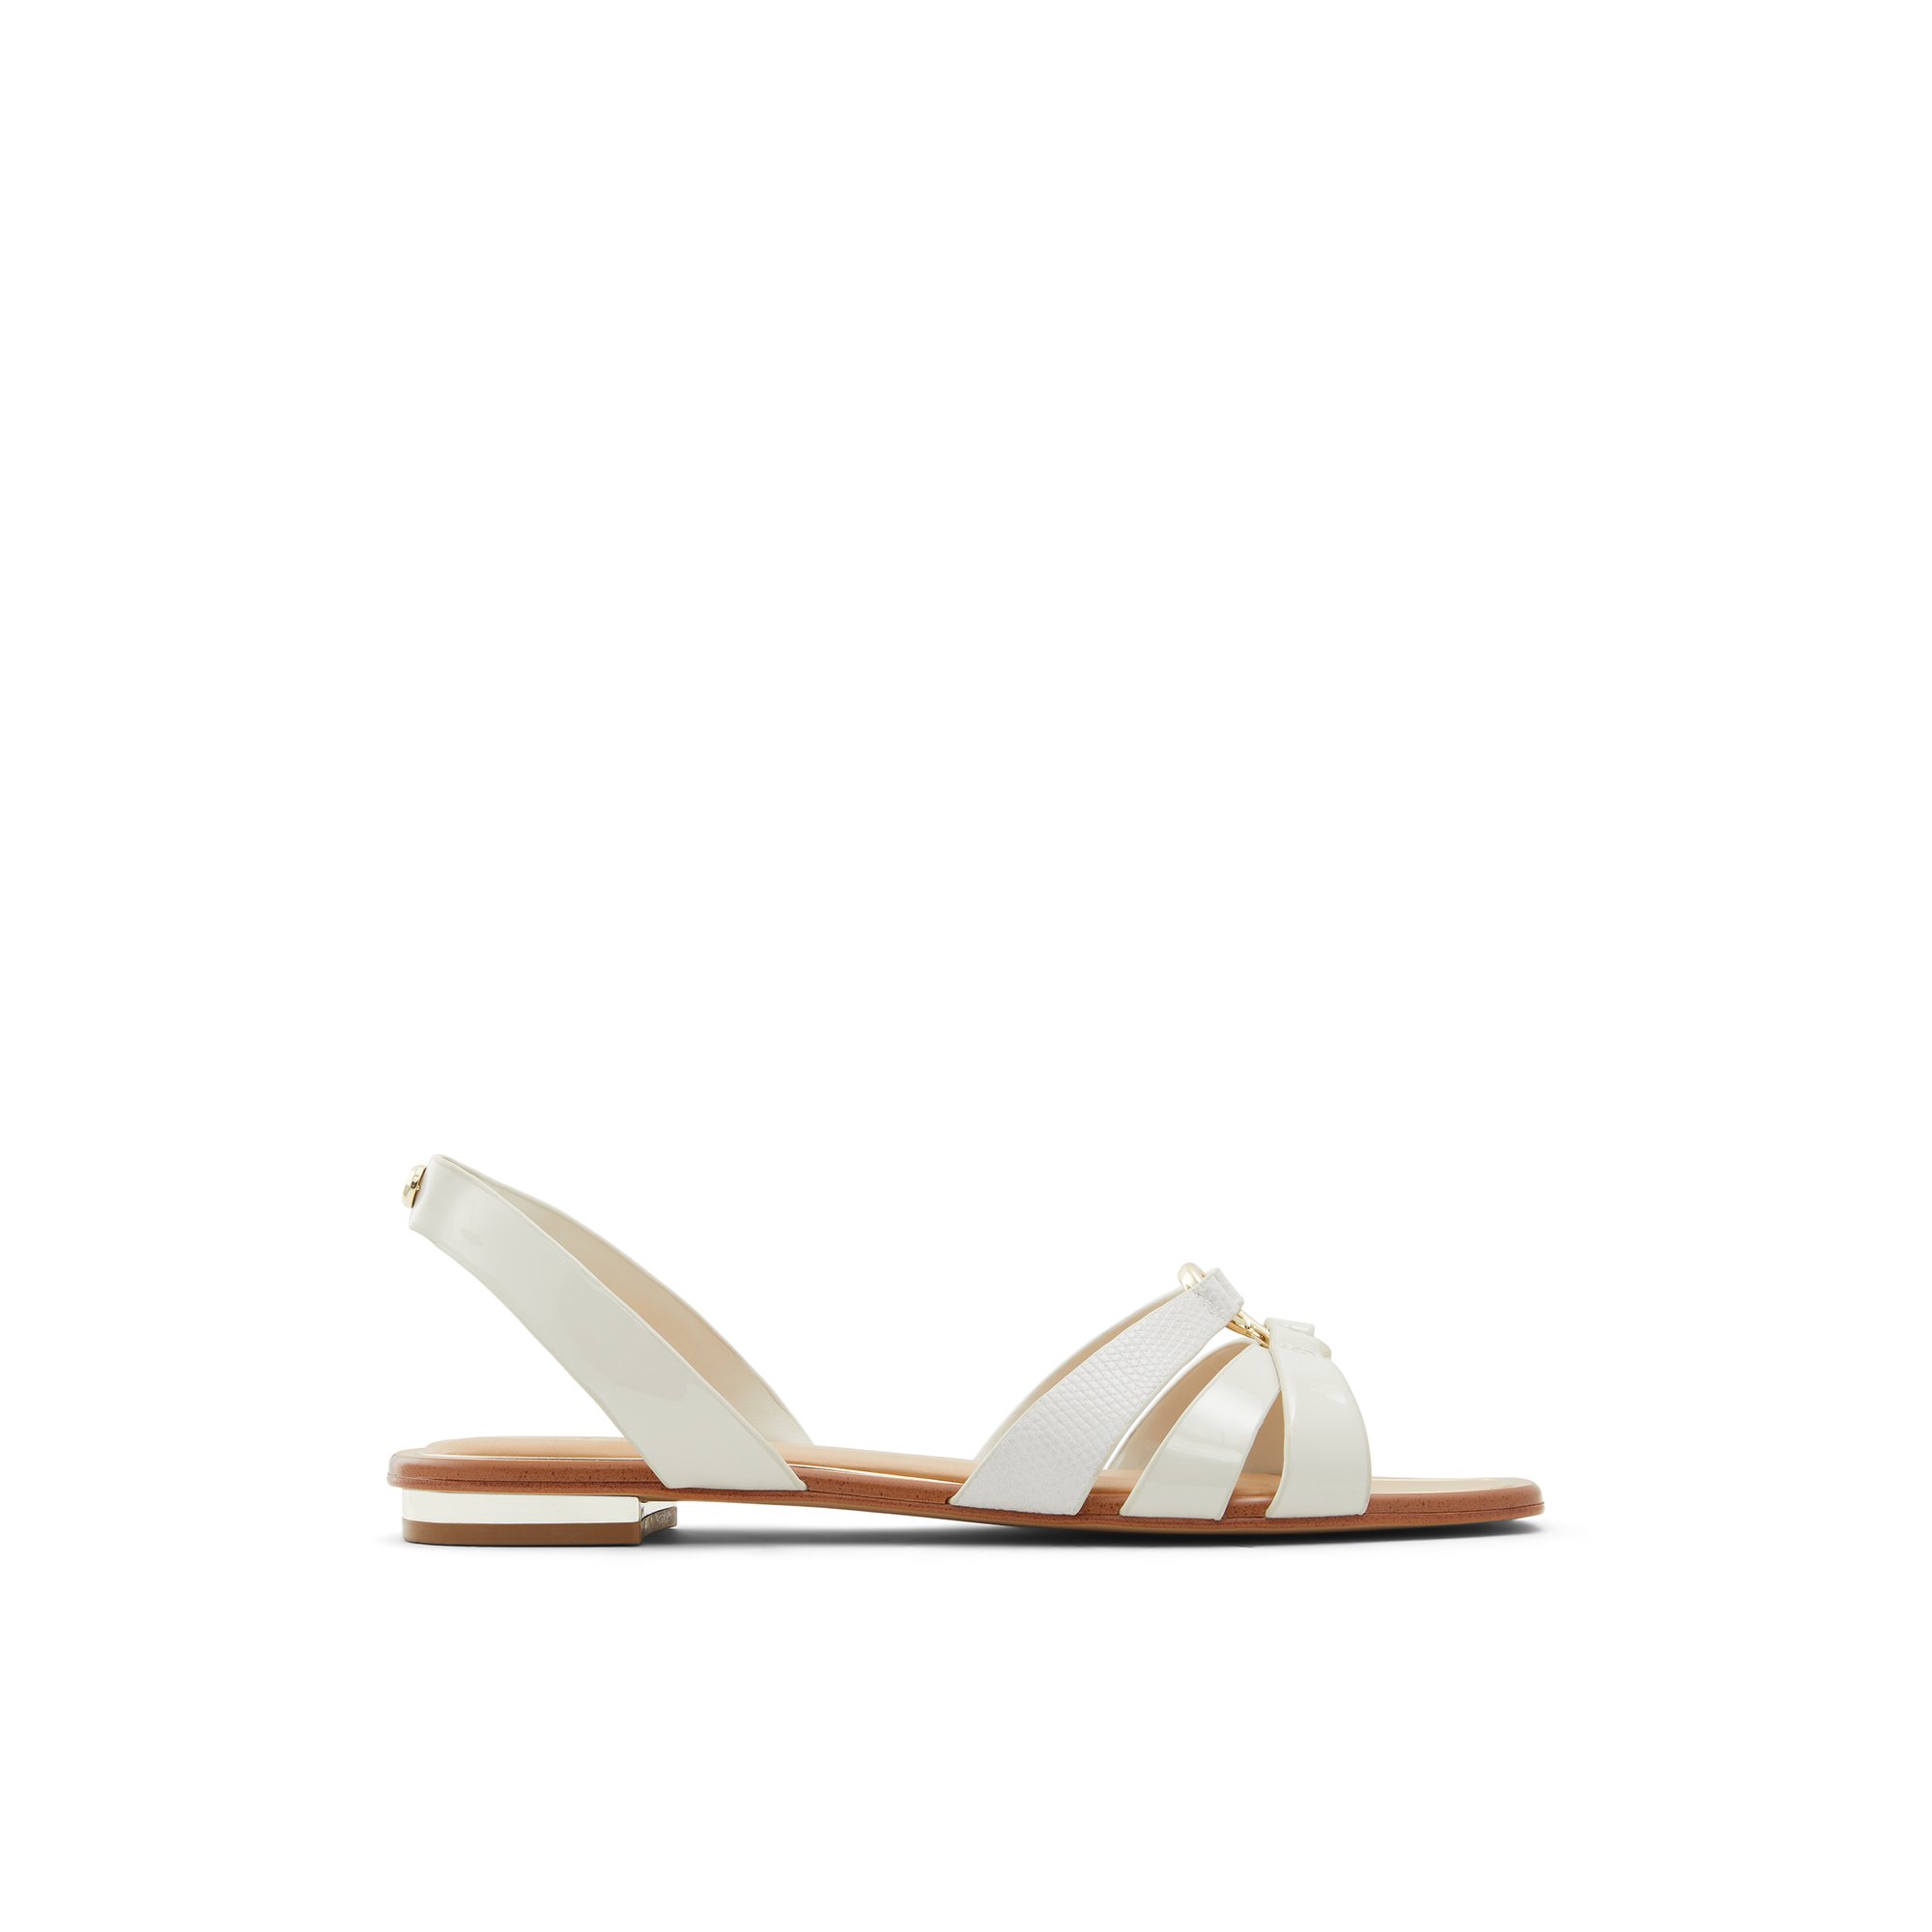 ALDO Marassi - Women's Sandals Flats - White